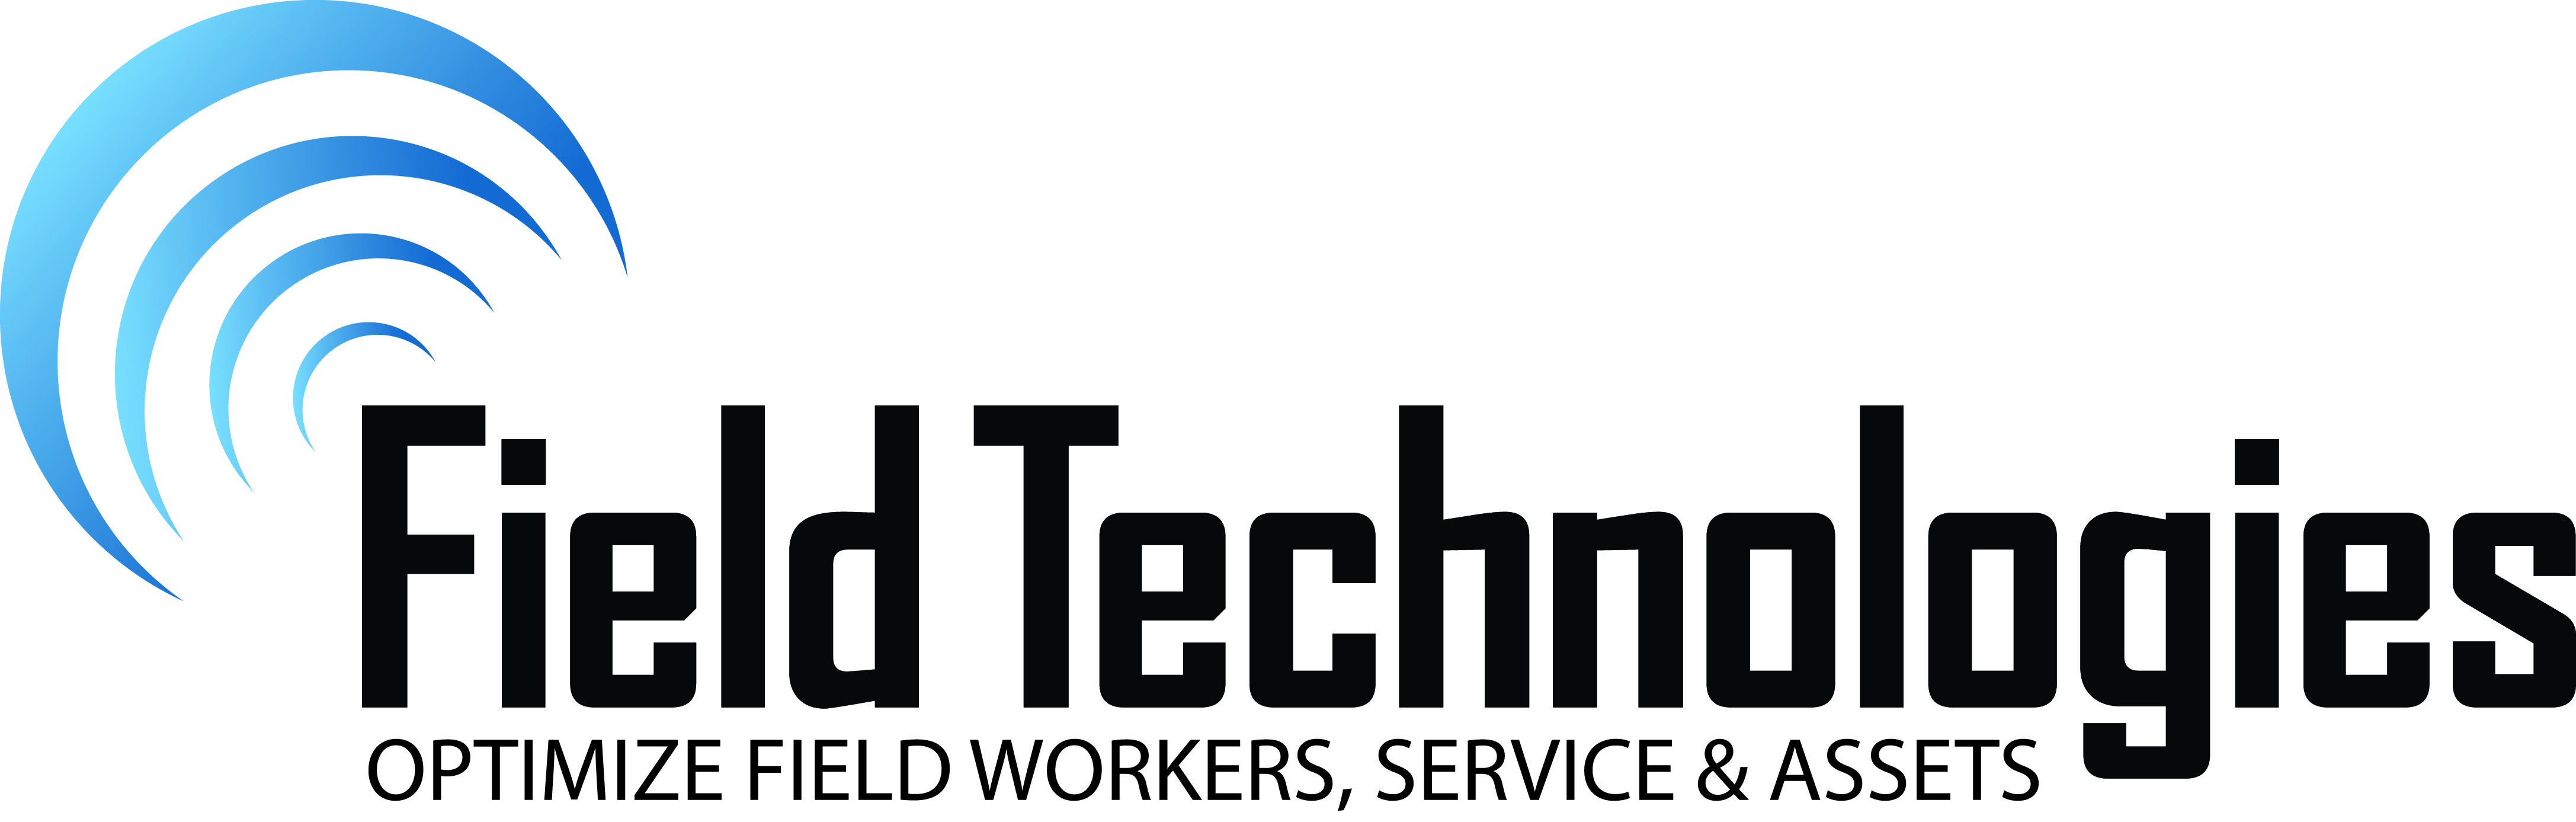 Field-Technologies_logo_DG_w_tagline